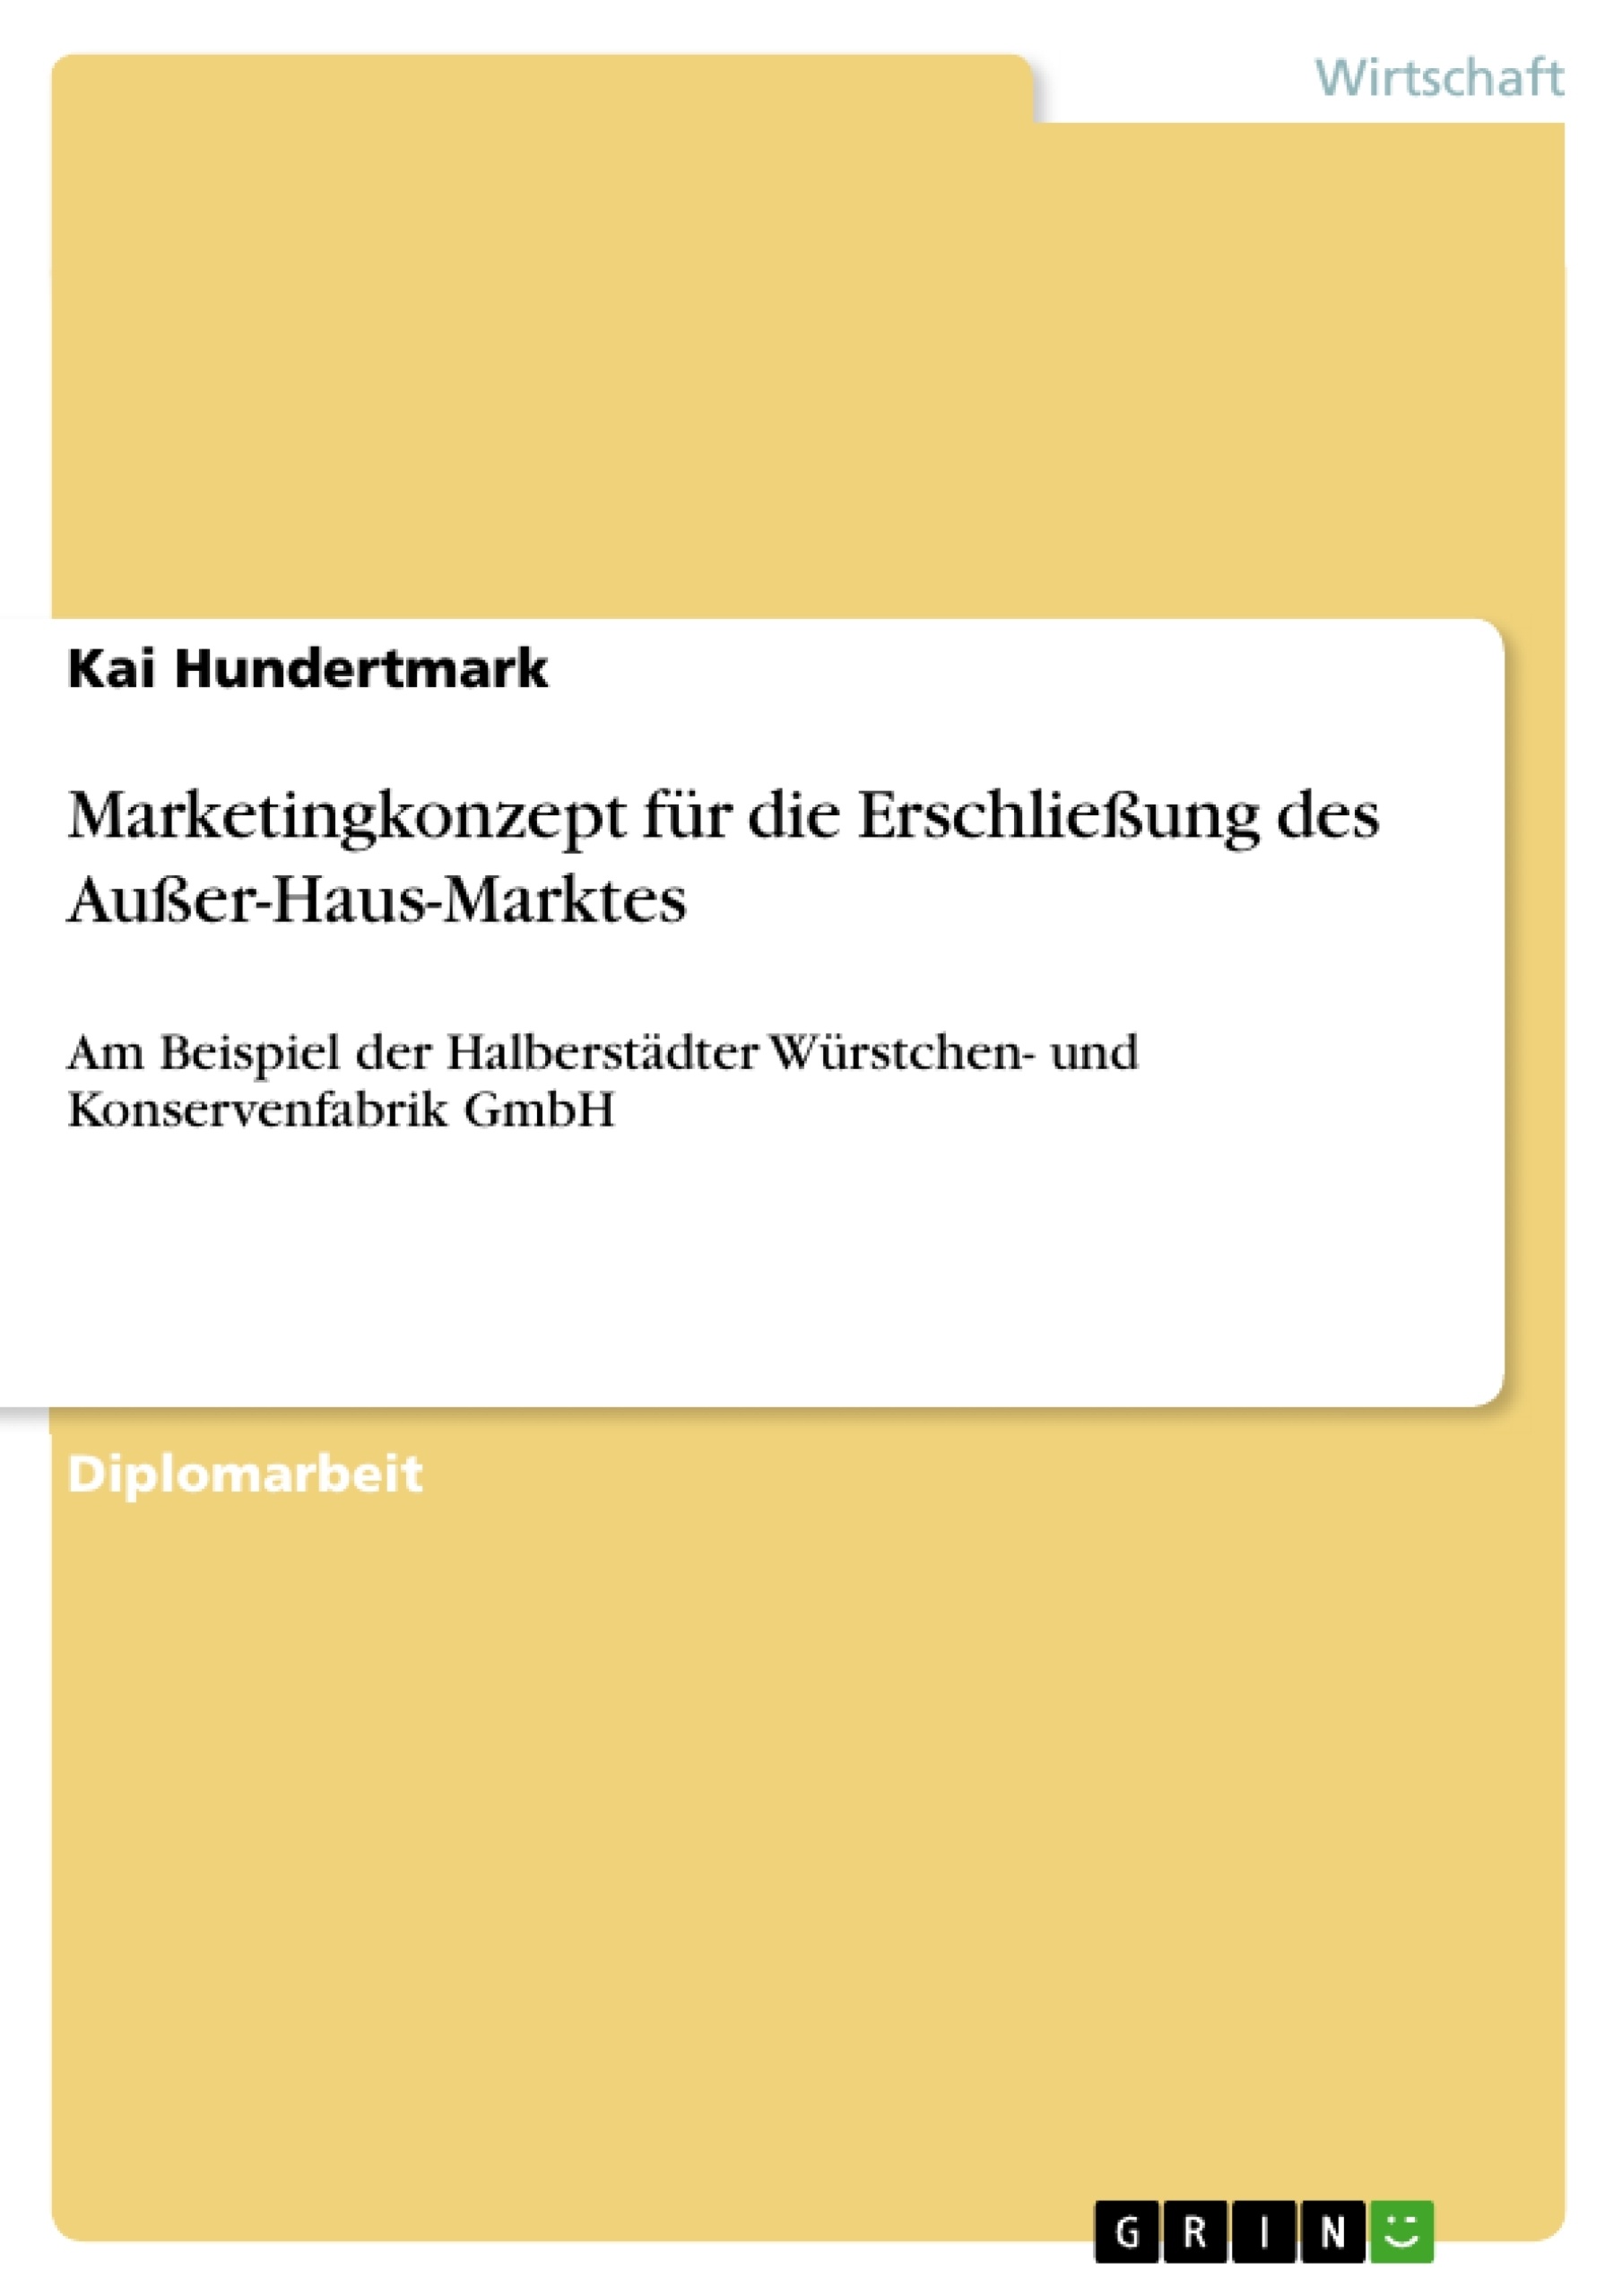 Title: Marketingkonzept für die Erschließung des Außer-Haus-Marktes